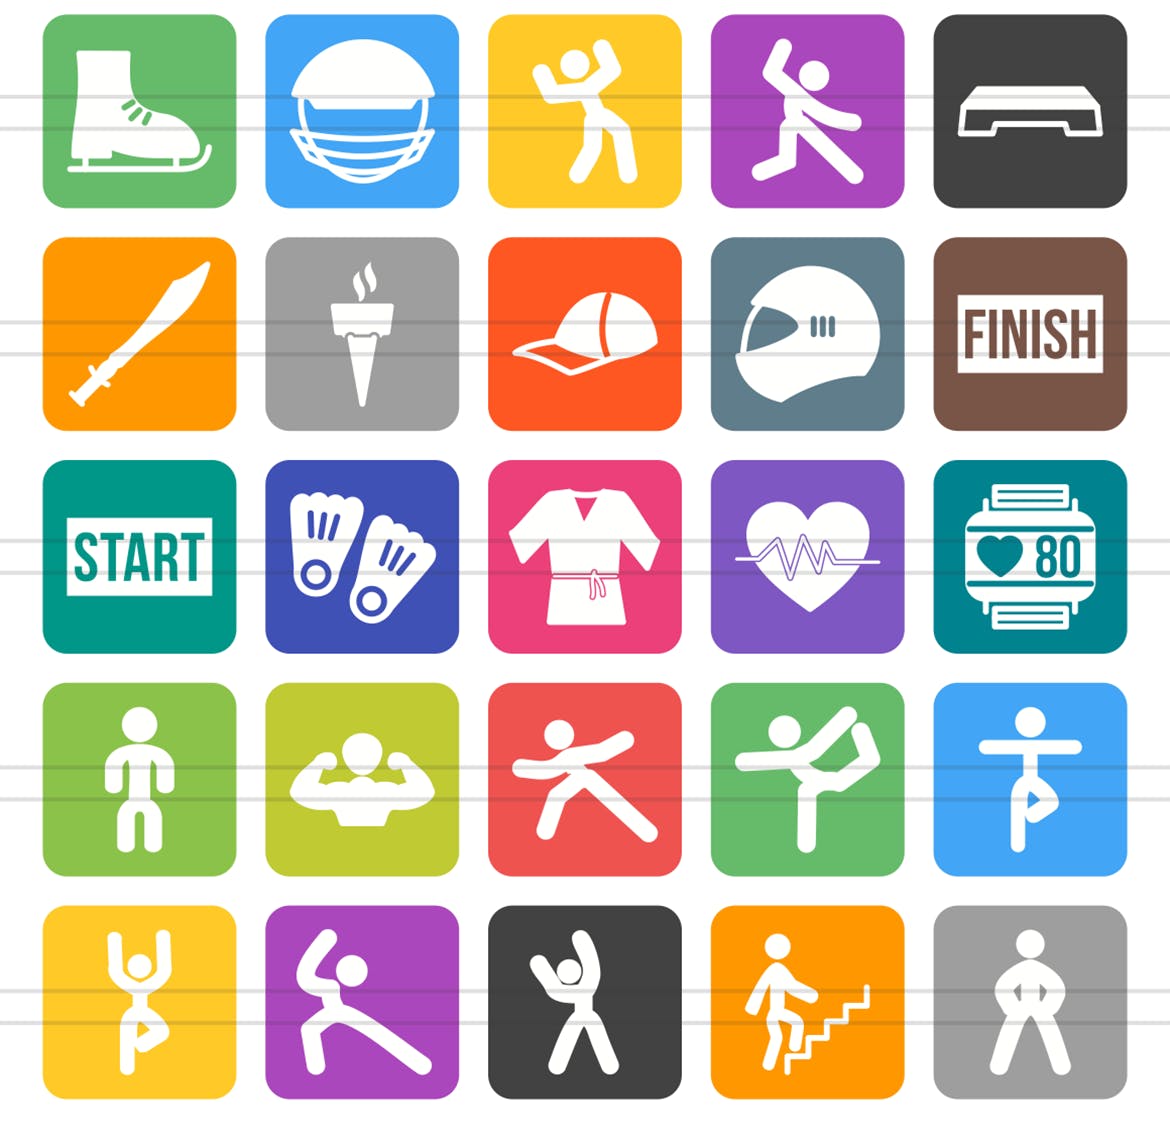 50枚健身&运动主题圆角图标素材 50 Fitness & Sports Flat Round Corner Icons插图(2)